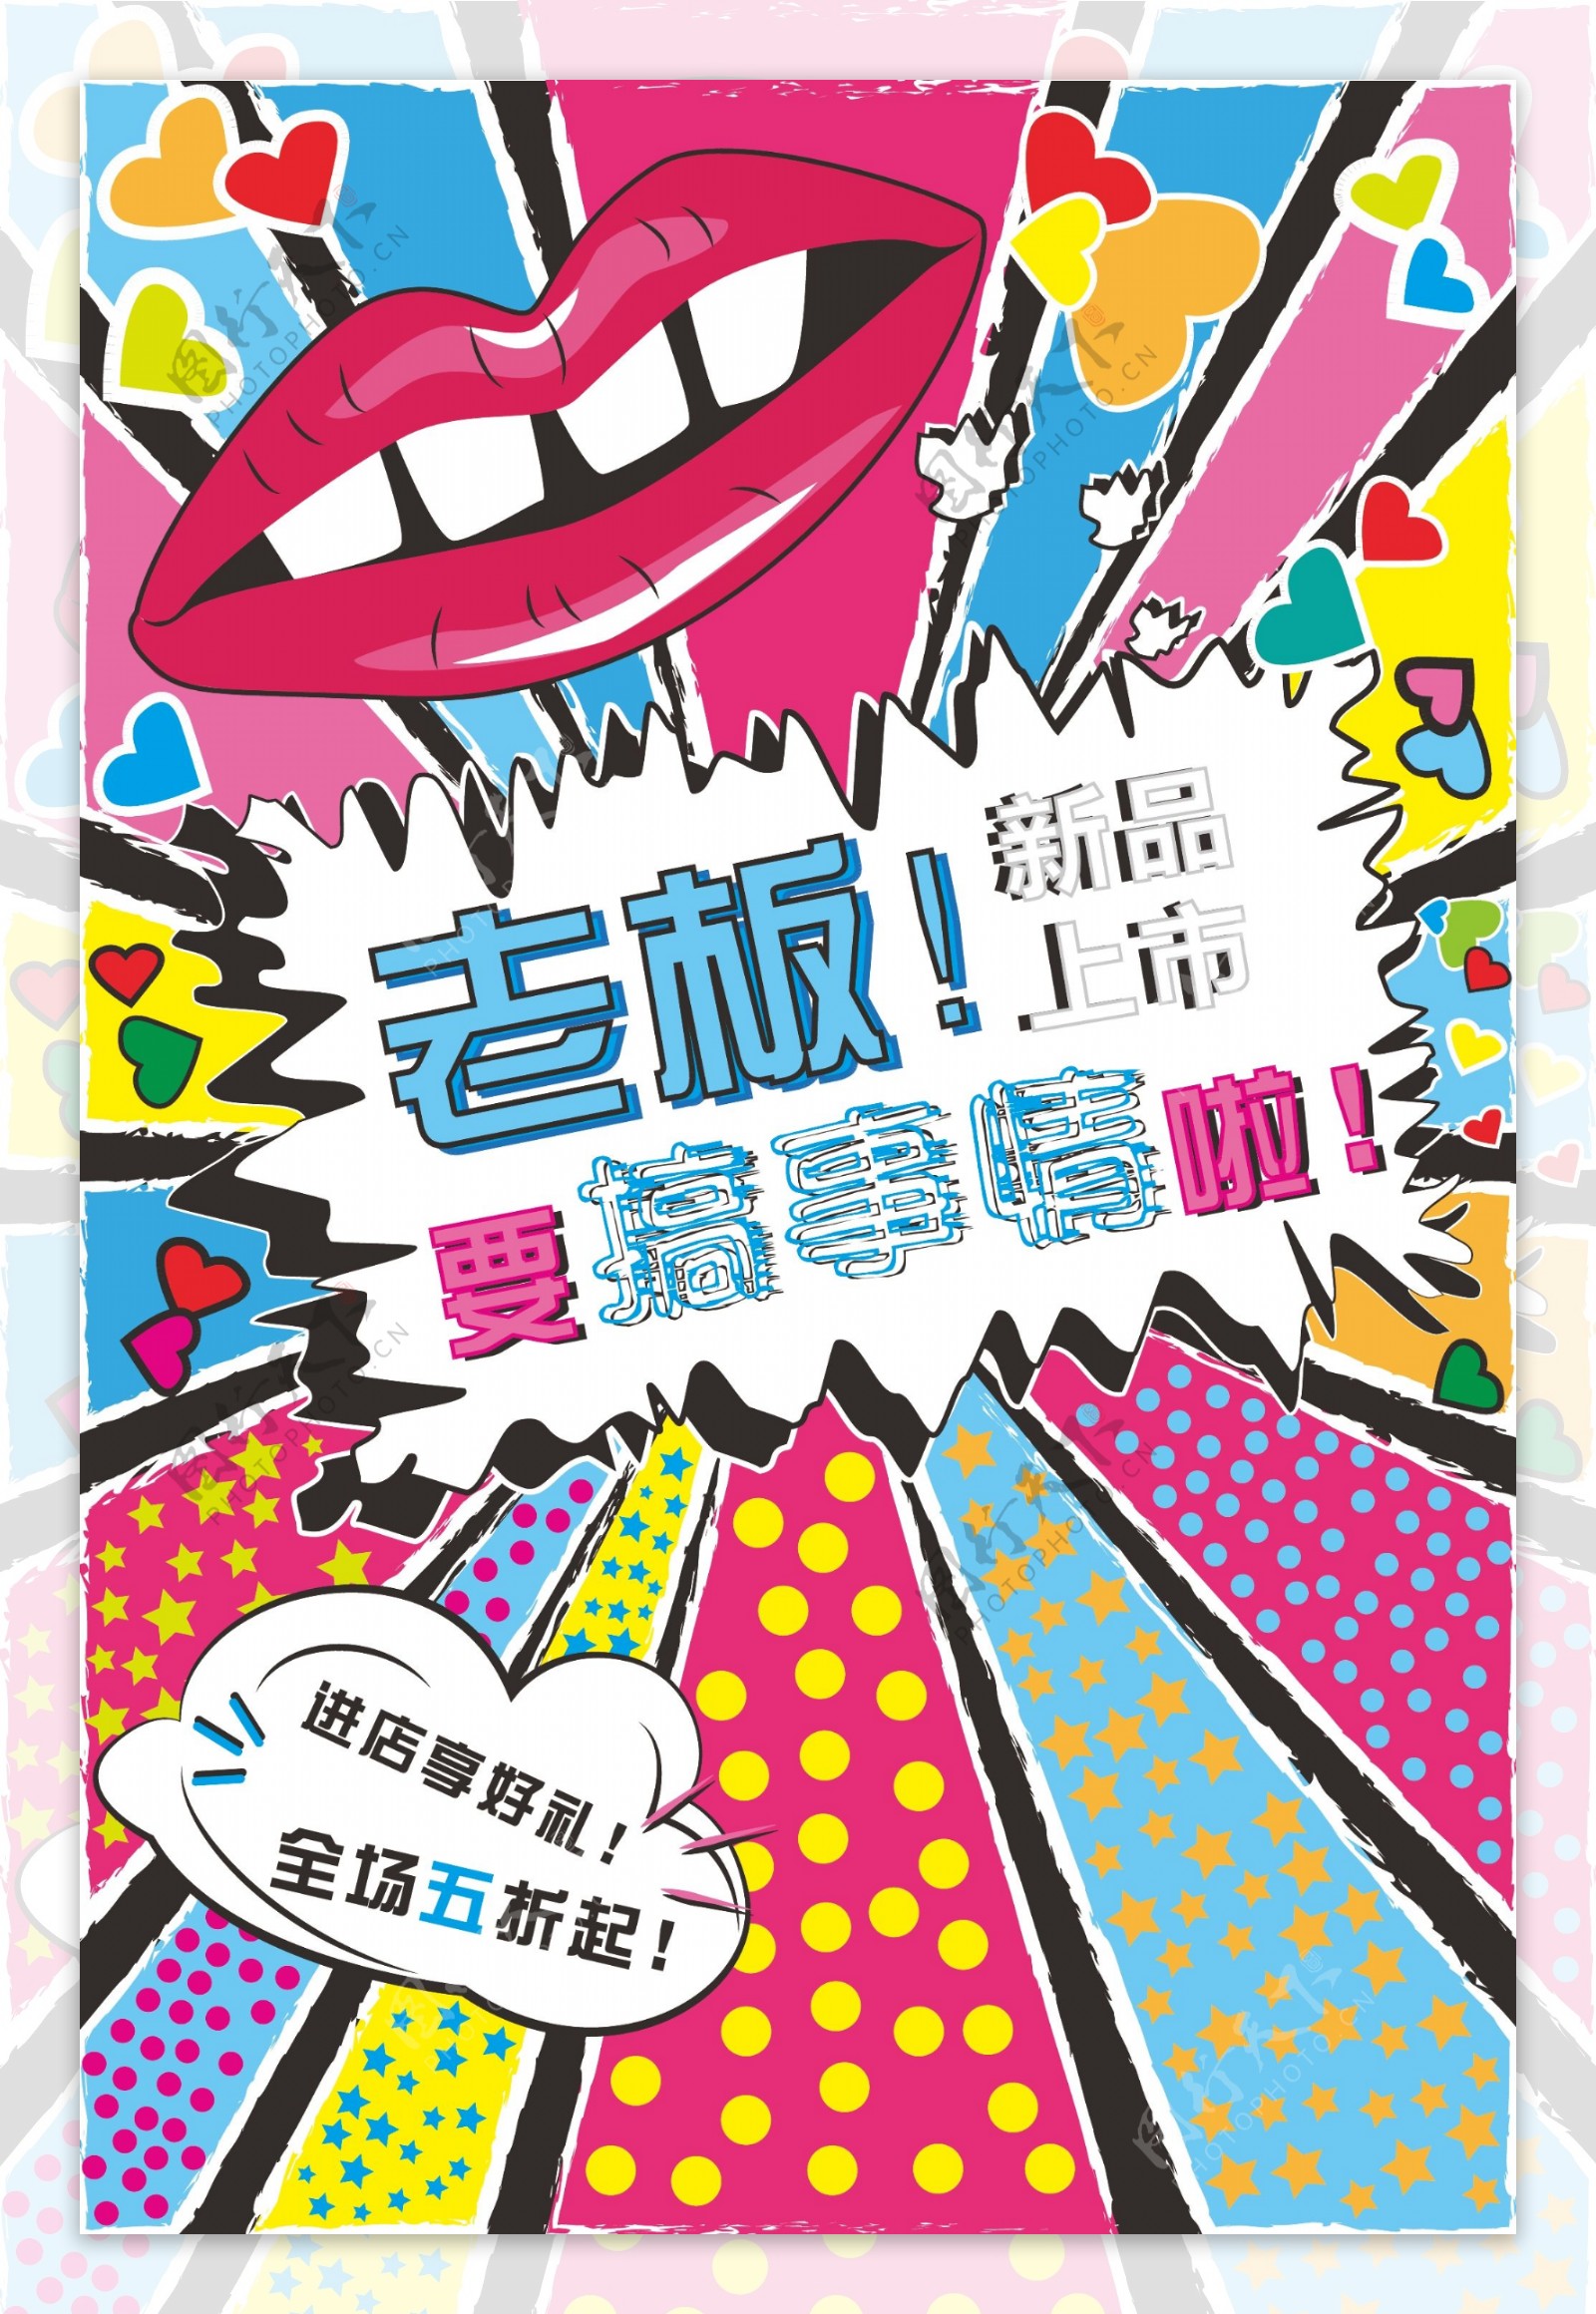 2017年彩色卡通风格商品促销海报设计